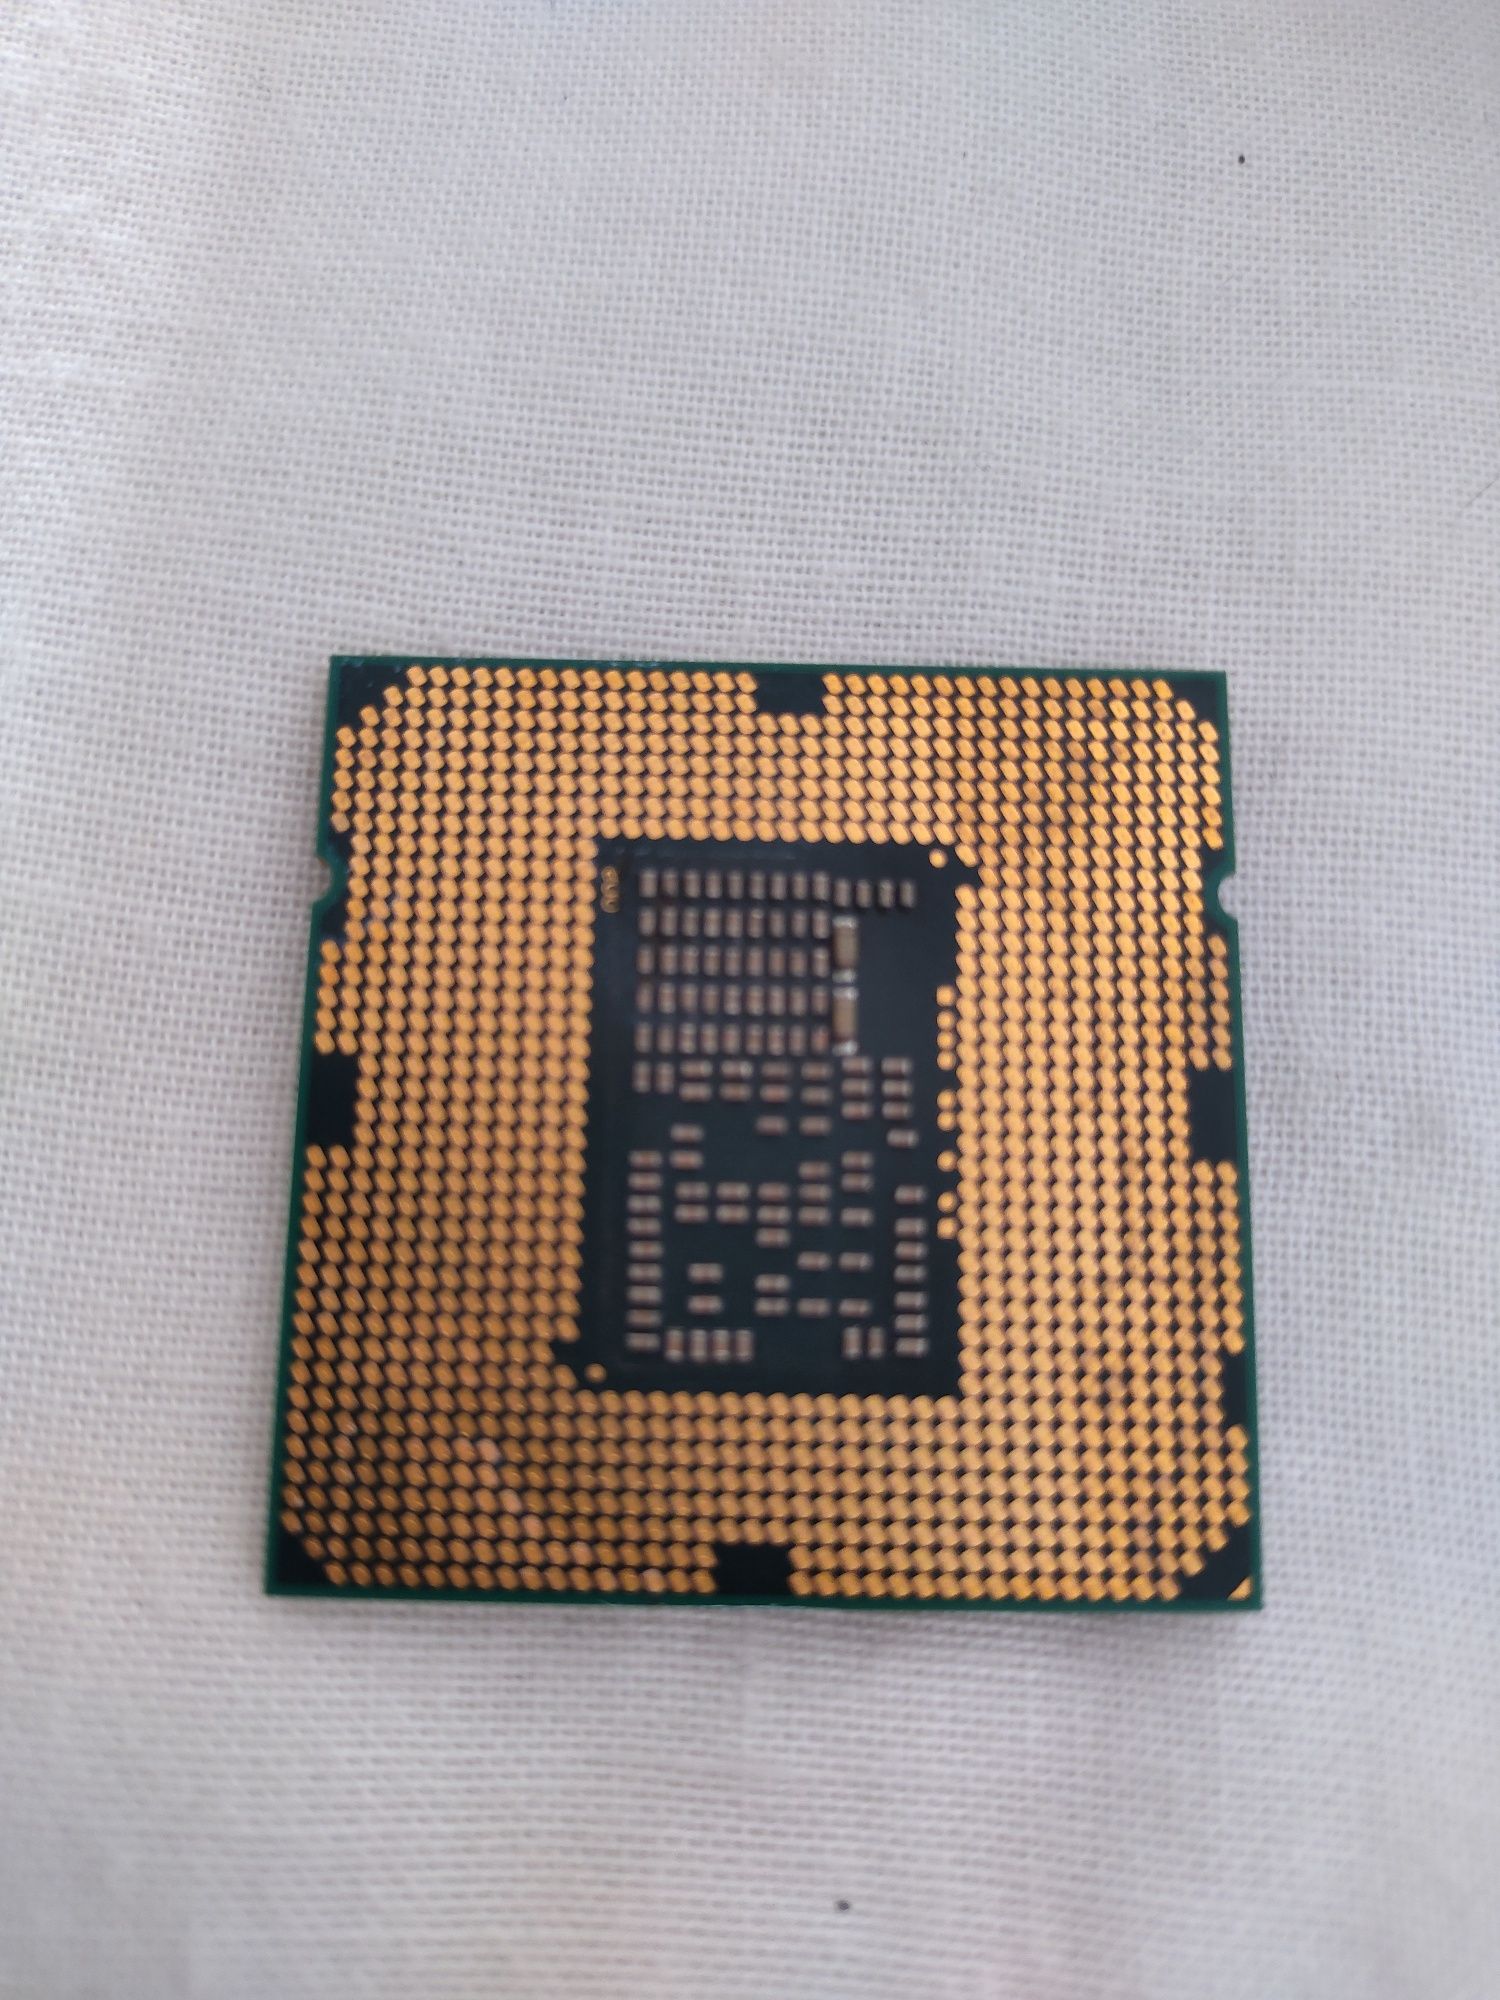 Processador Intel core I5-650